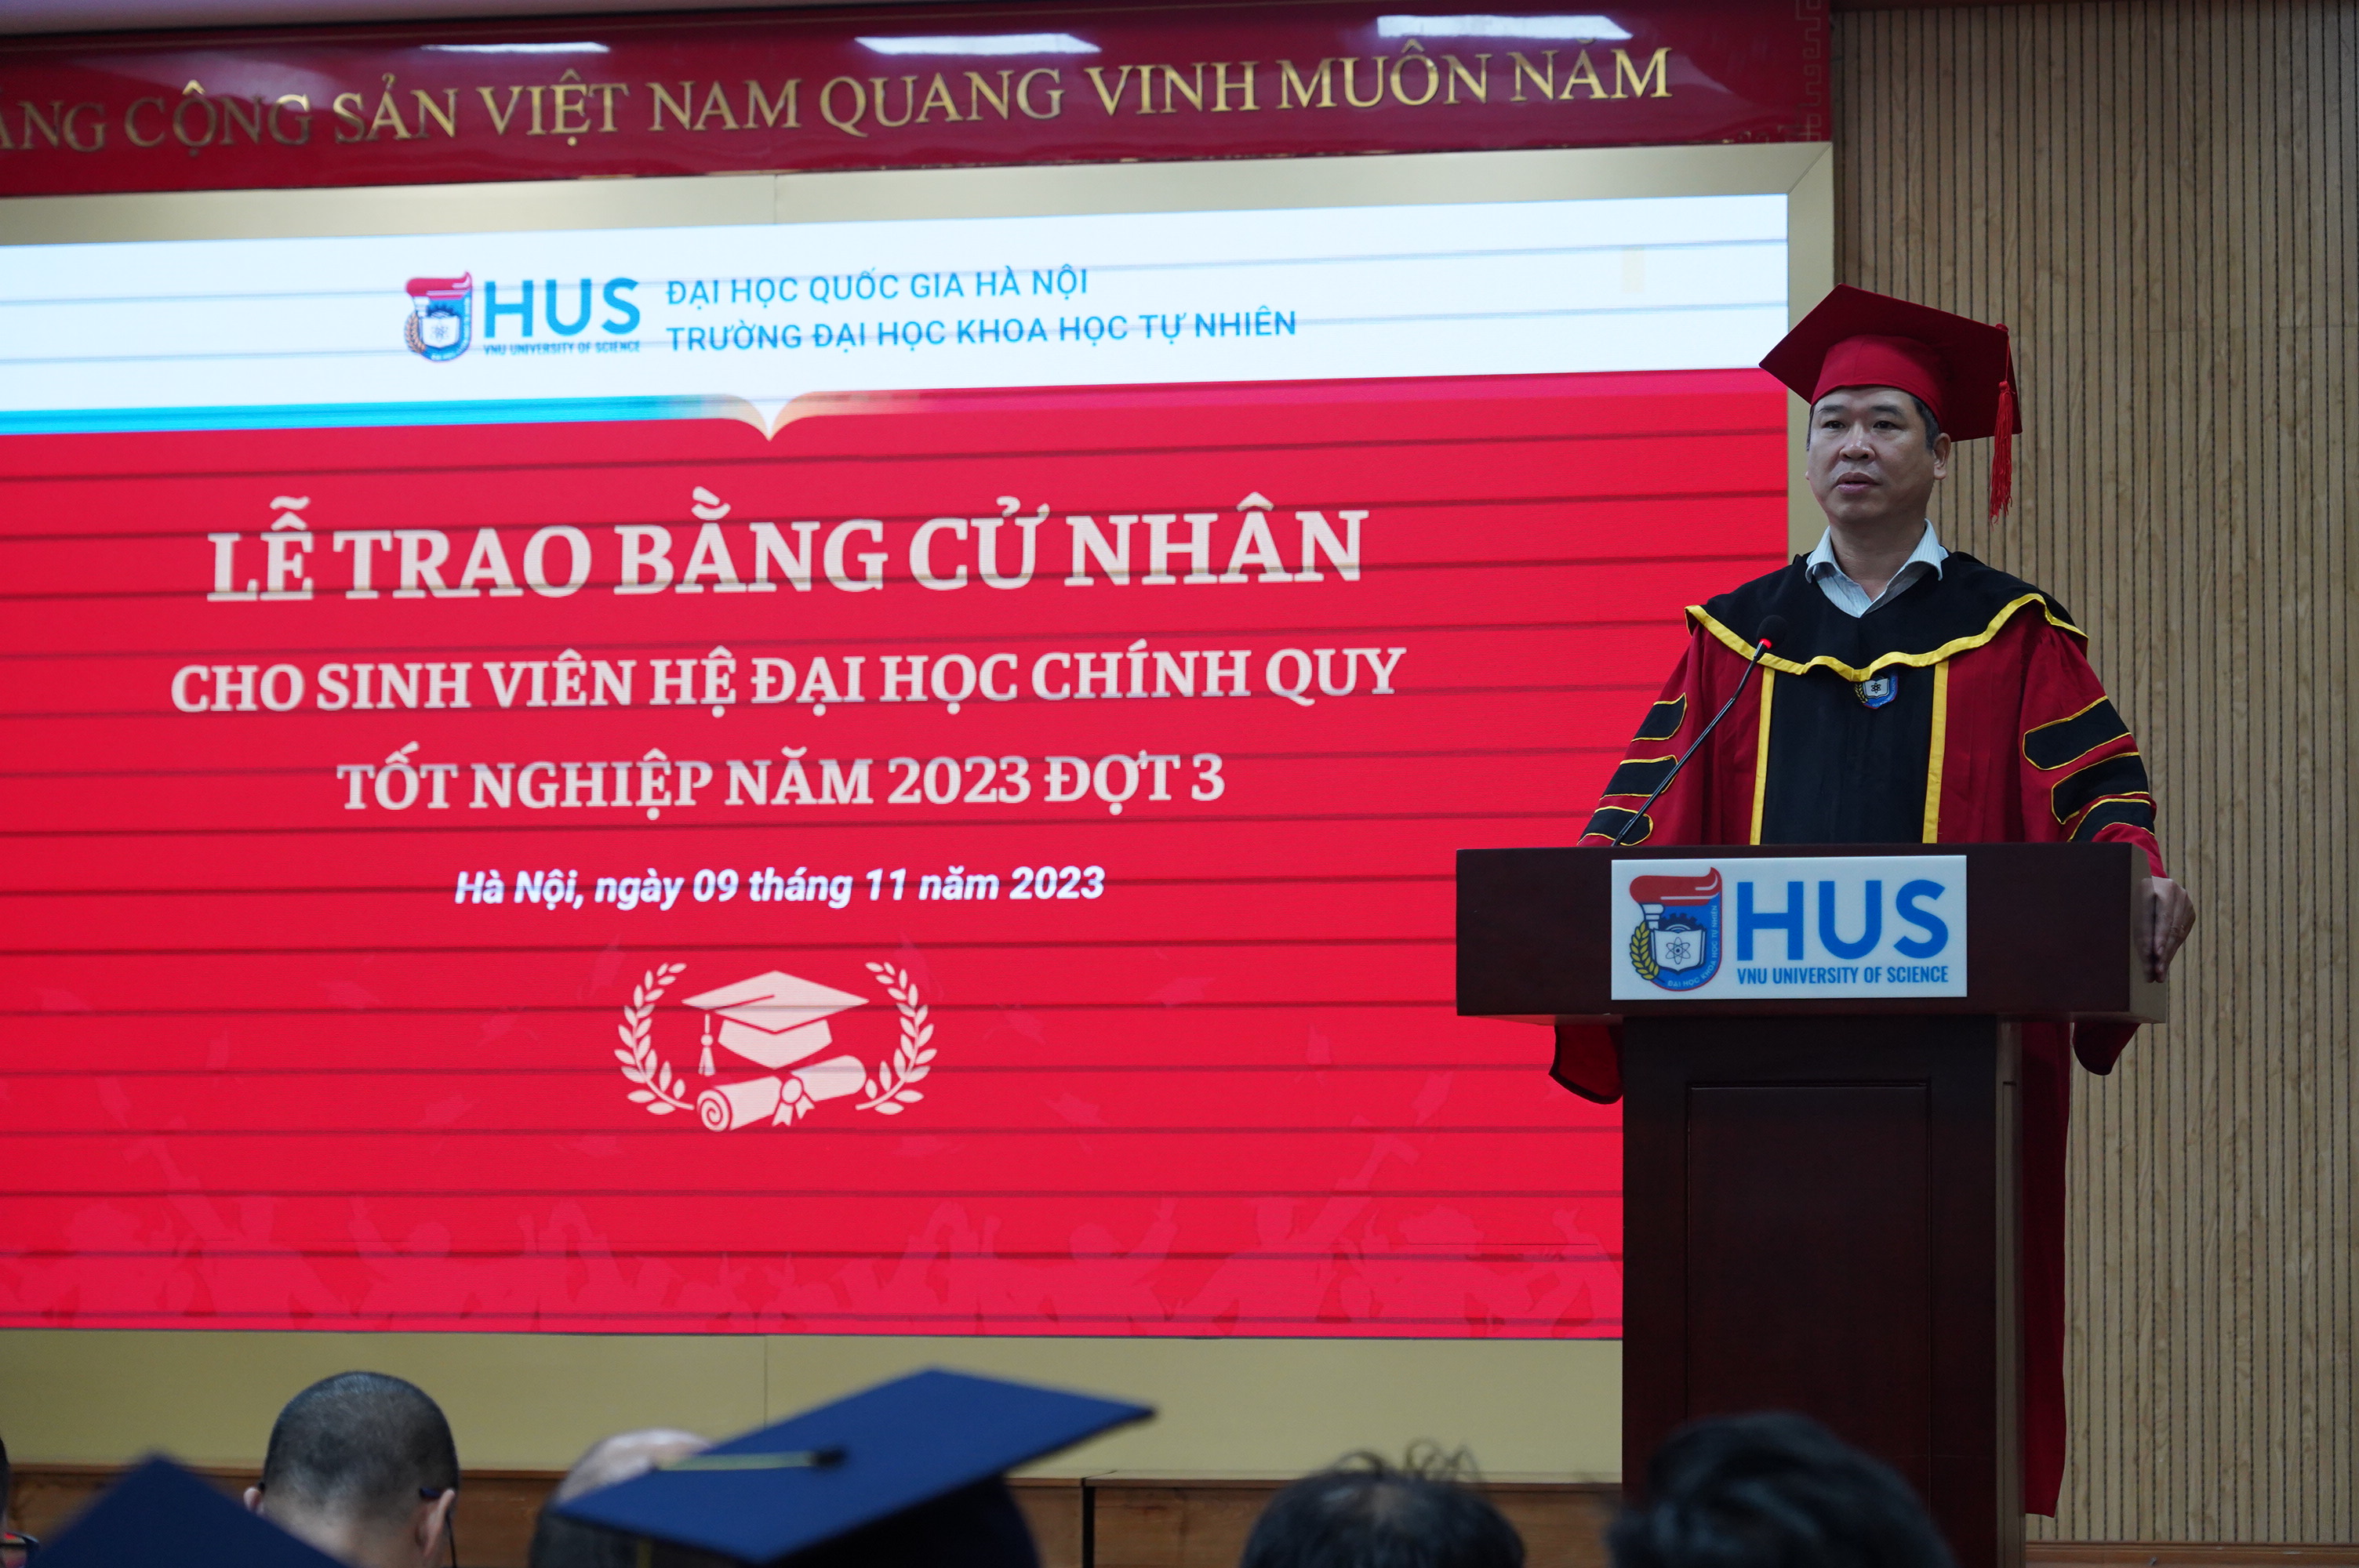 Trường ĐHKHTN trao bằng cử nhân hệ đại học chính quy cho sinh viên tốt nghiệp năm 2023 (đợt 3)